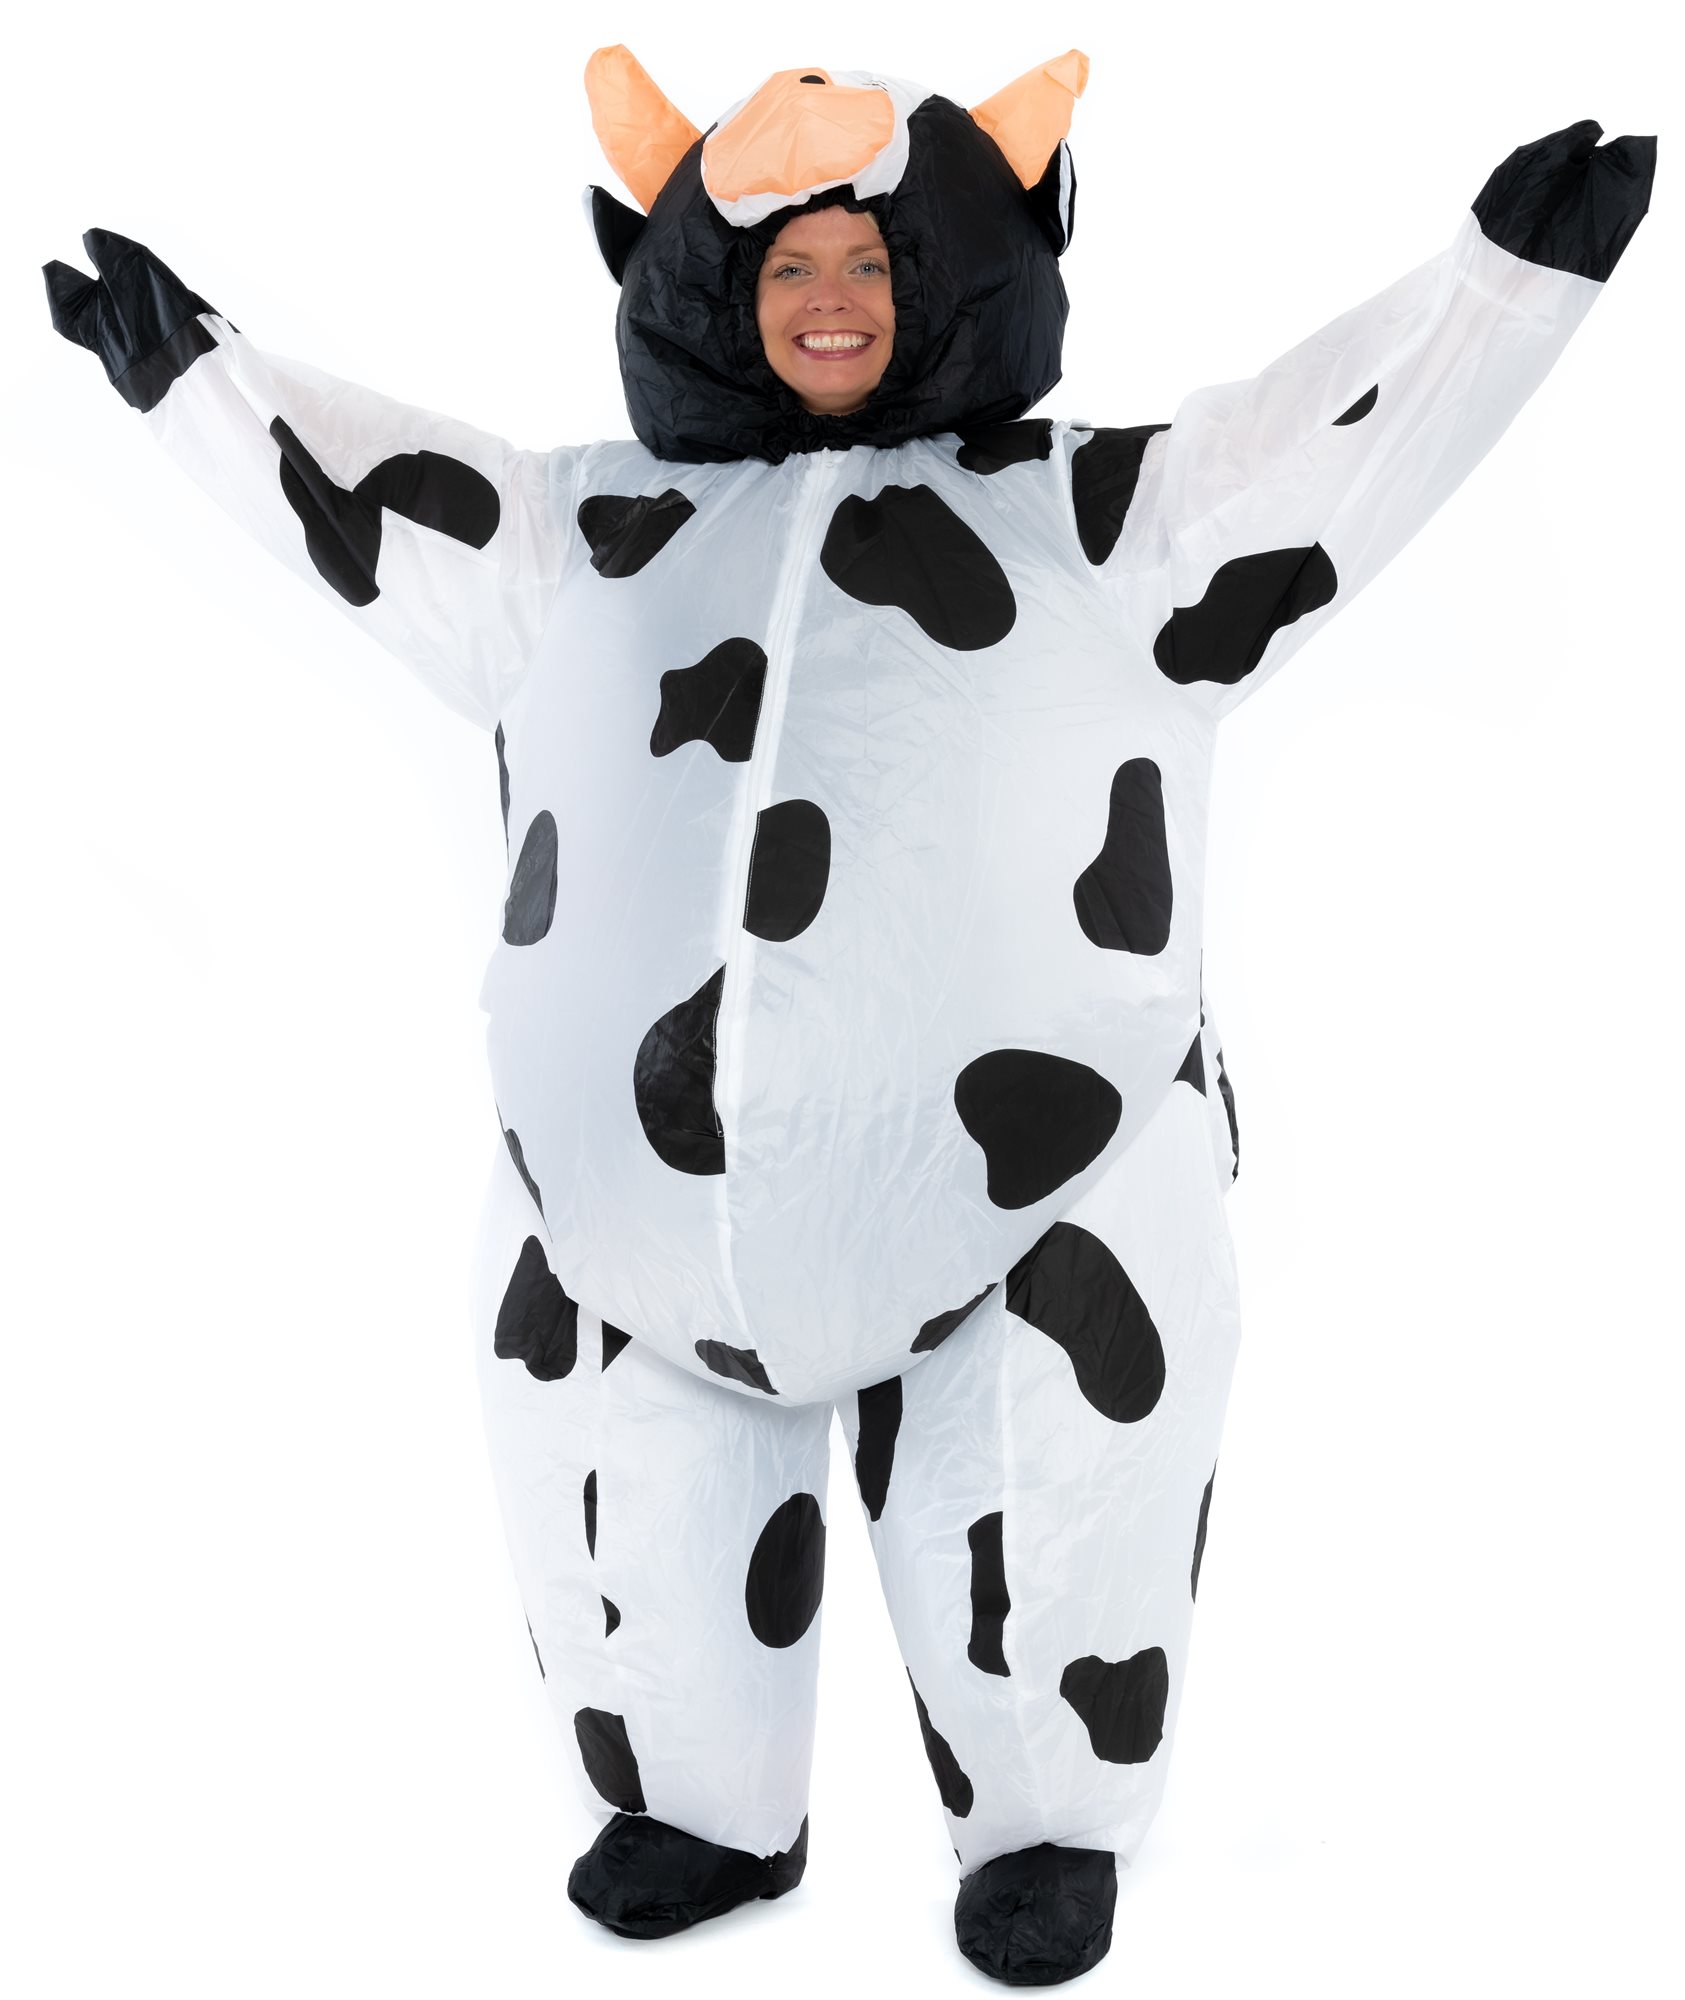 Jelmez Felfújható jelmez felnőtteknek - Milk Cow